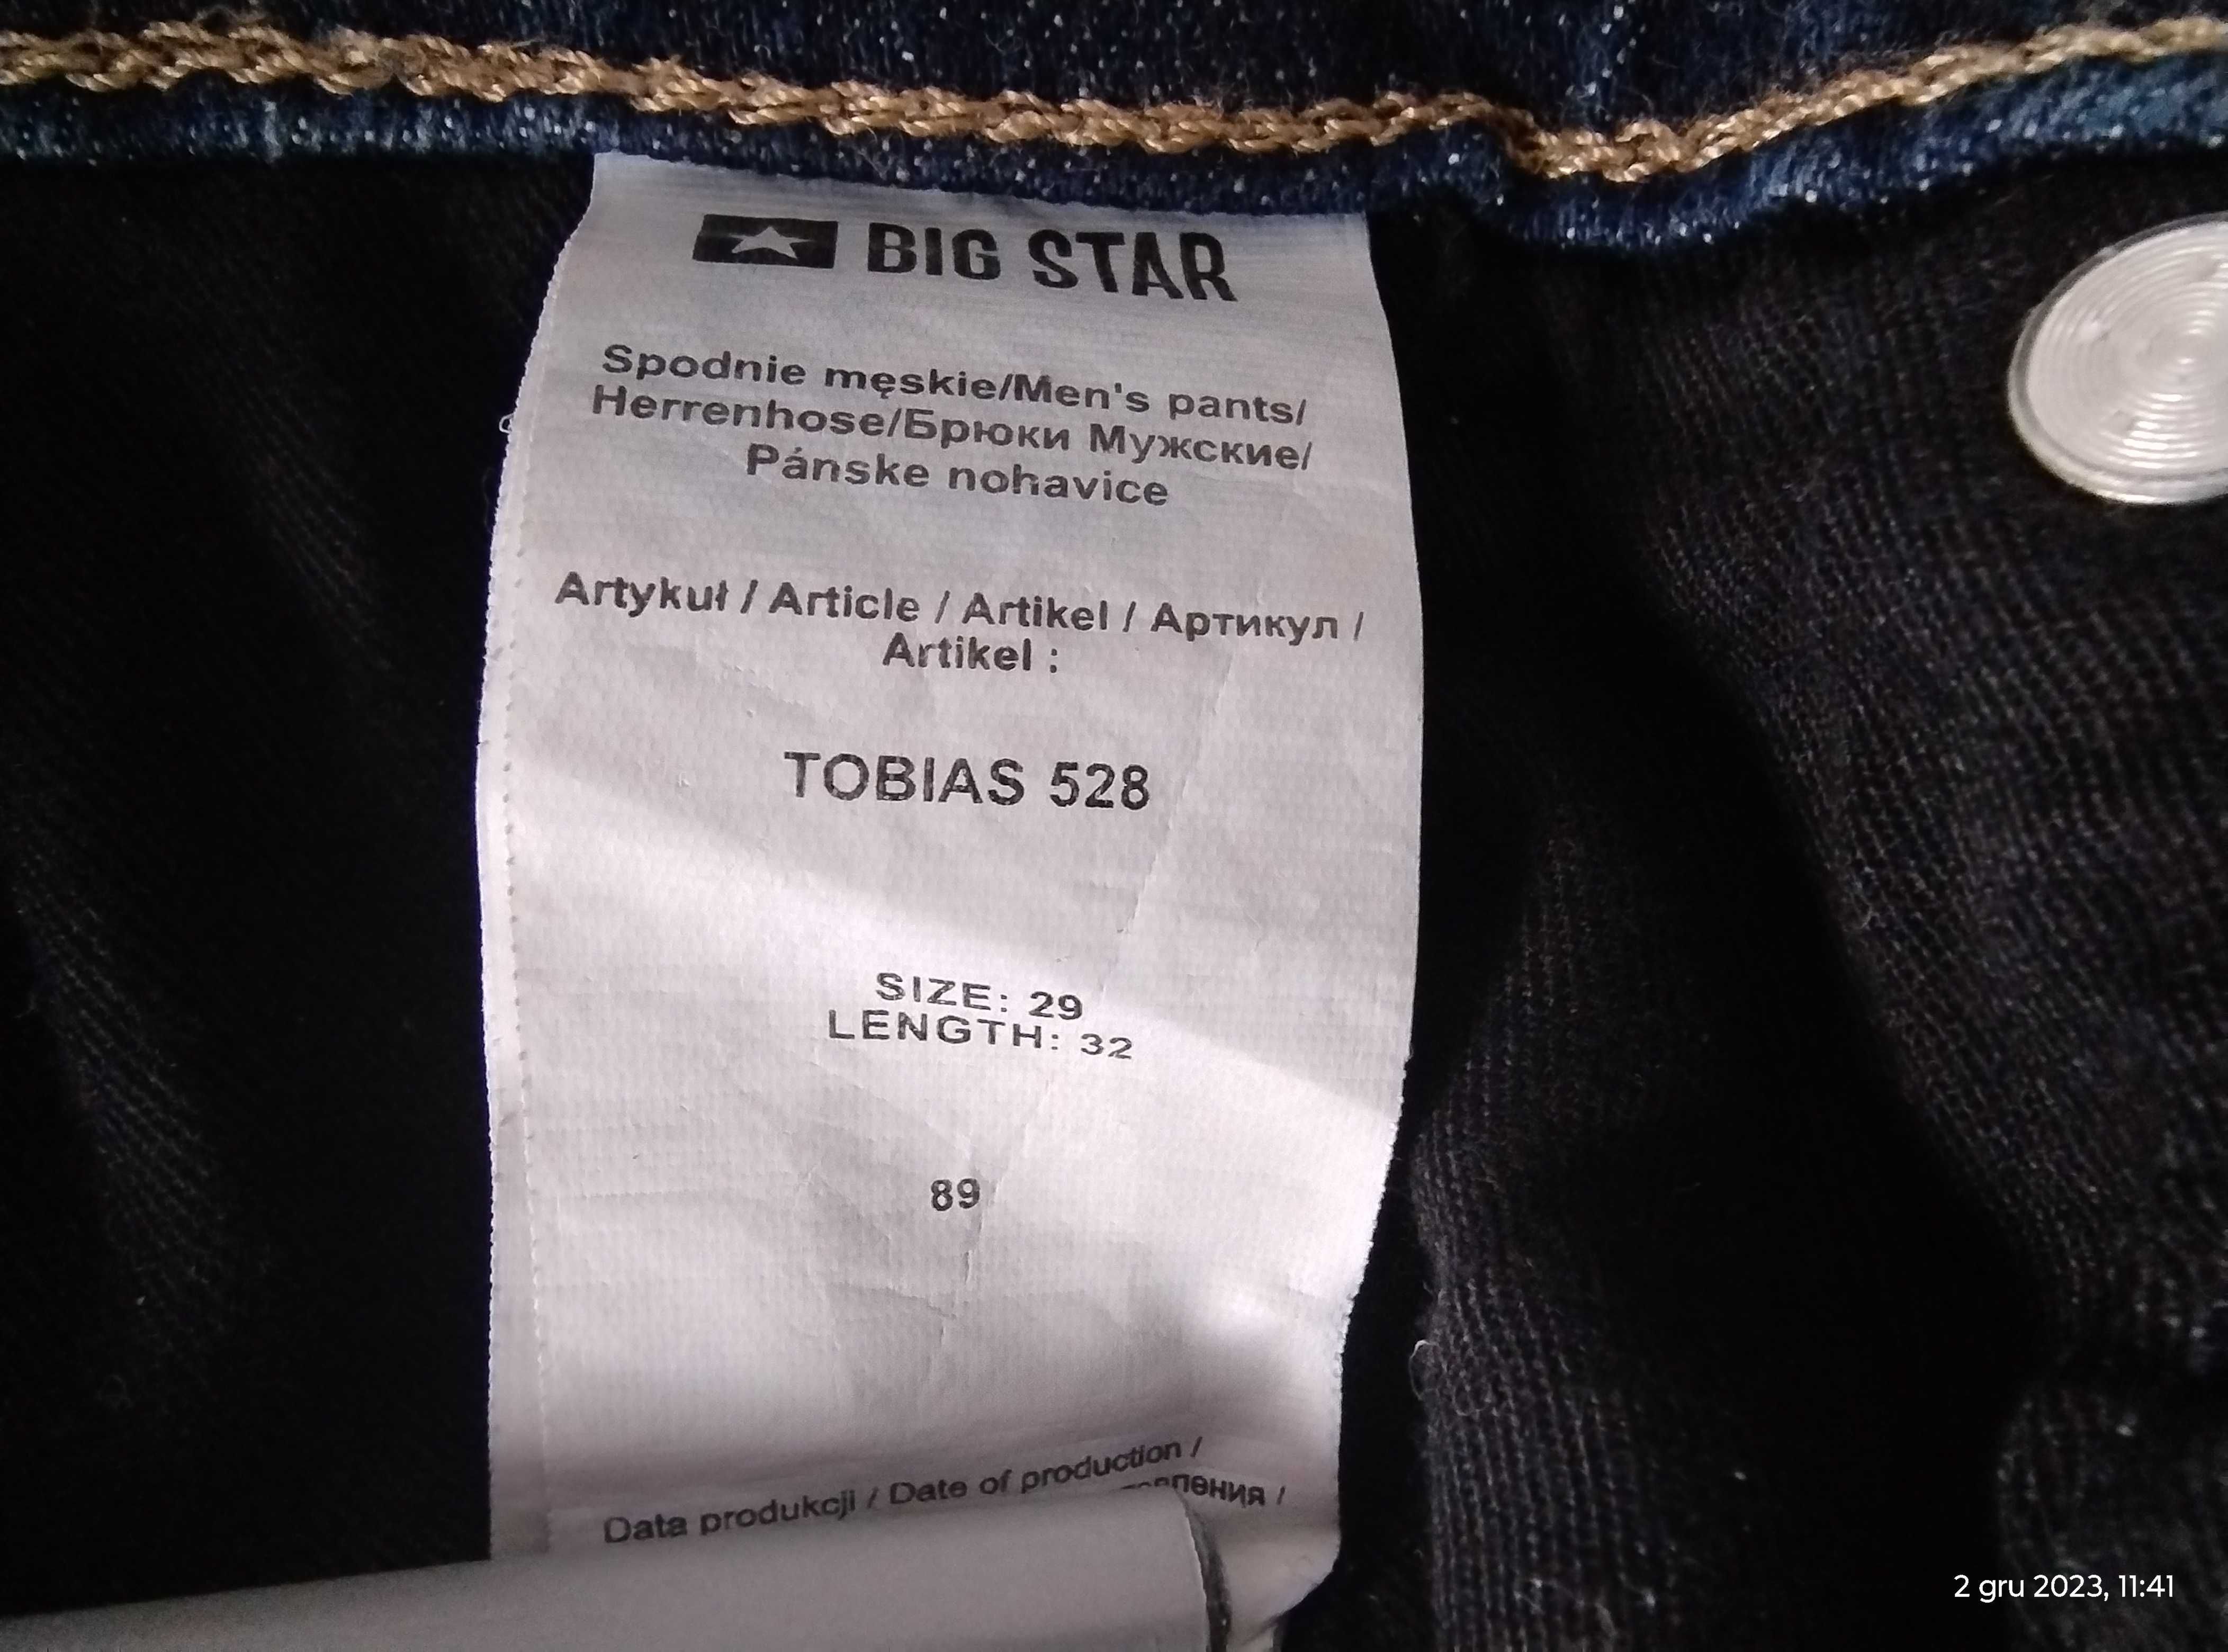 Big Star 28/32 męskie Tobias 528